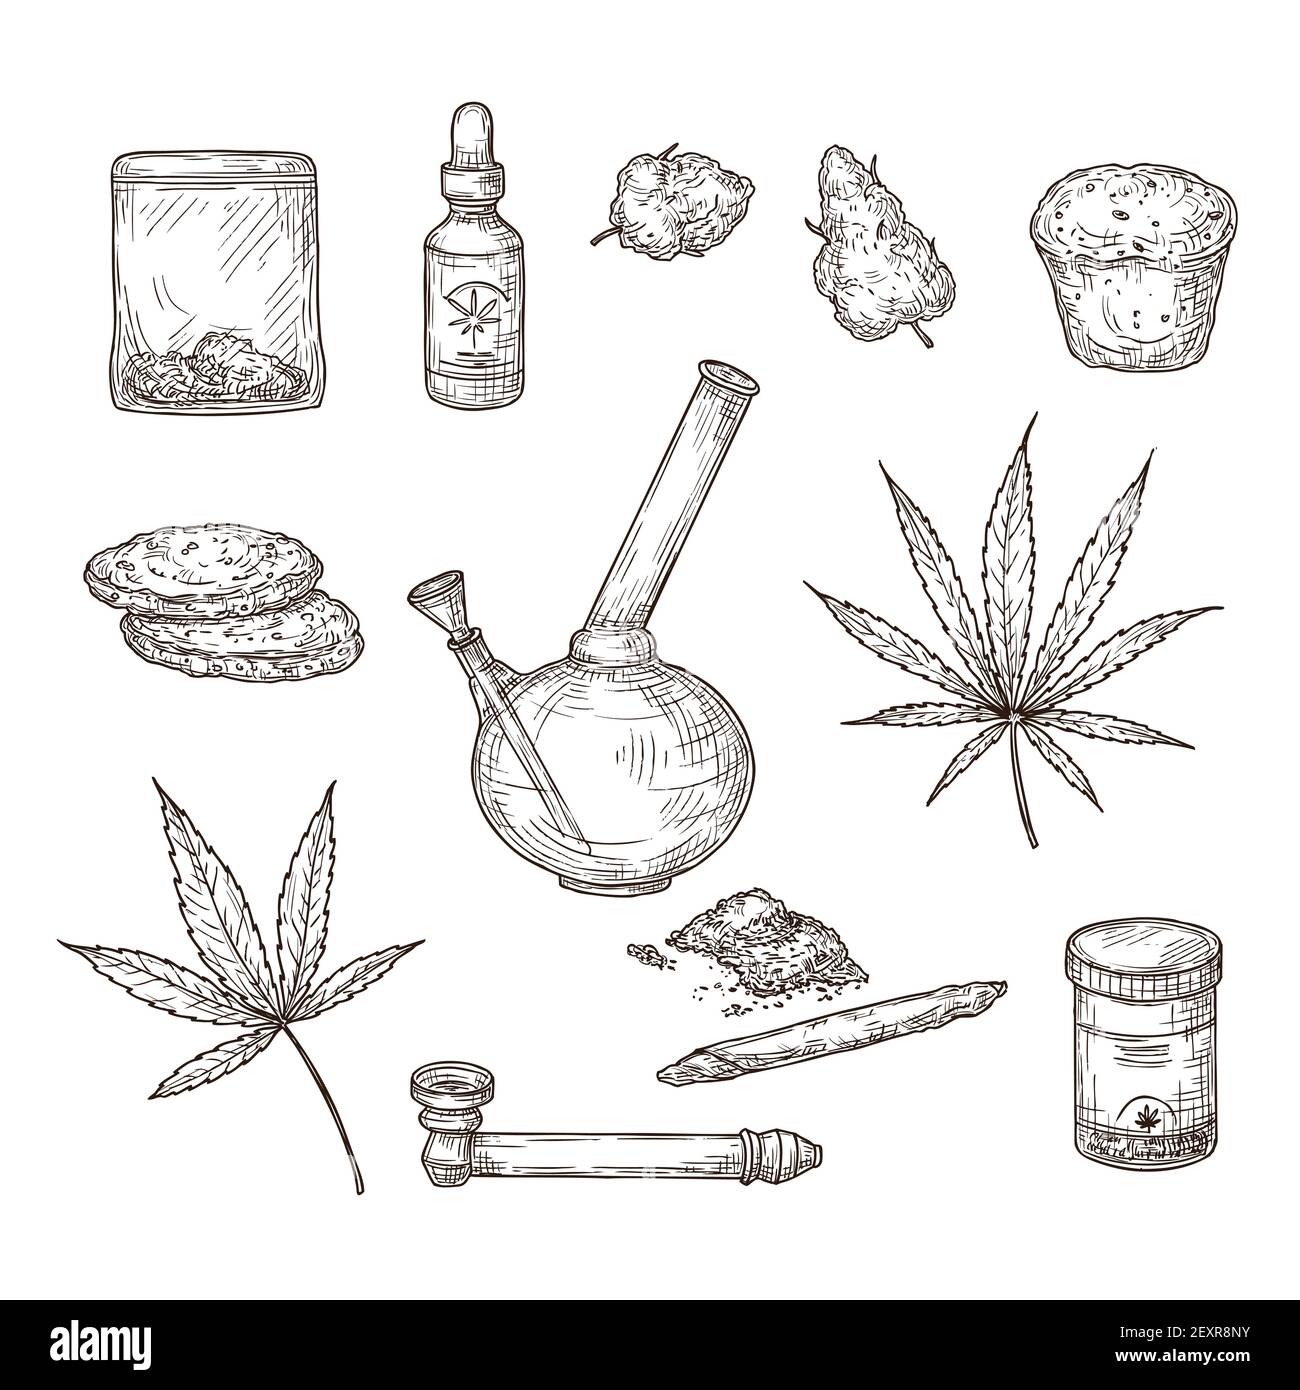 Skizzieren Sie Cannabis. Medizinische Marihuanablätter, Unkrautgelenk und Bong, cbd-Öl. Handgezeichneter Ganja-Vektor-Satz. Illustration Skizze Cannabis Unkraut, natürliche Bio-Hanf Stock Vektor